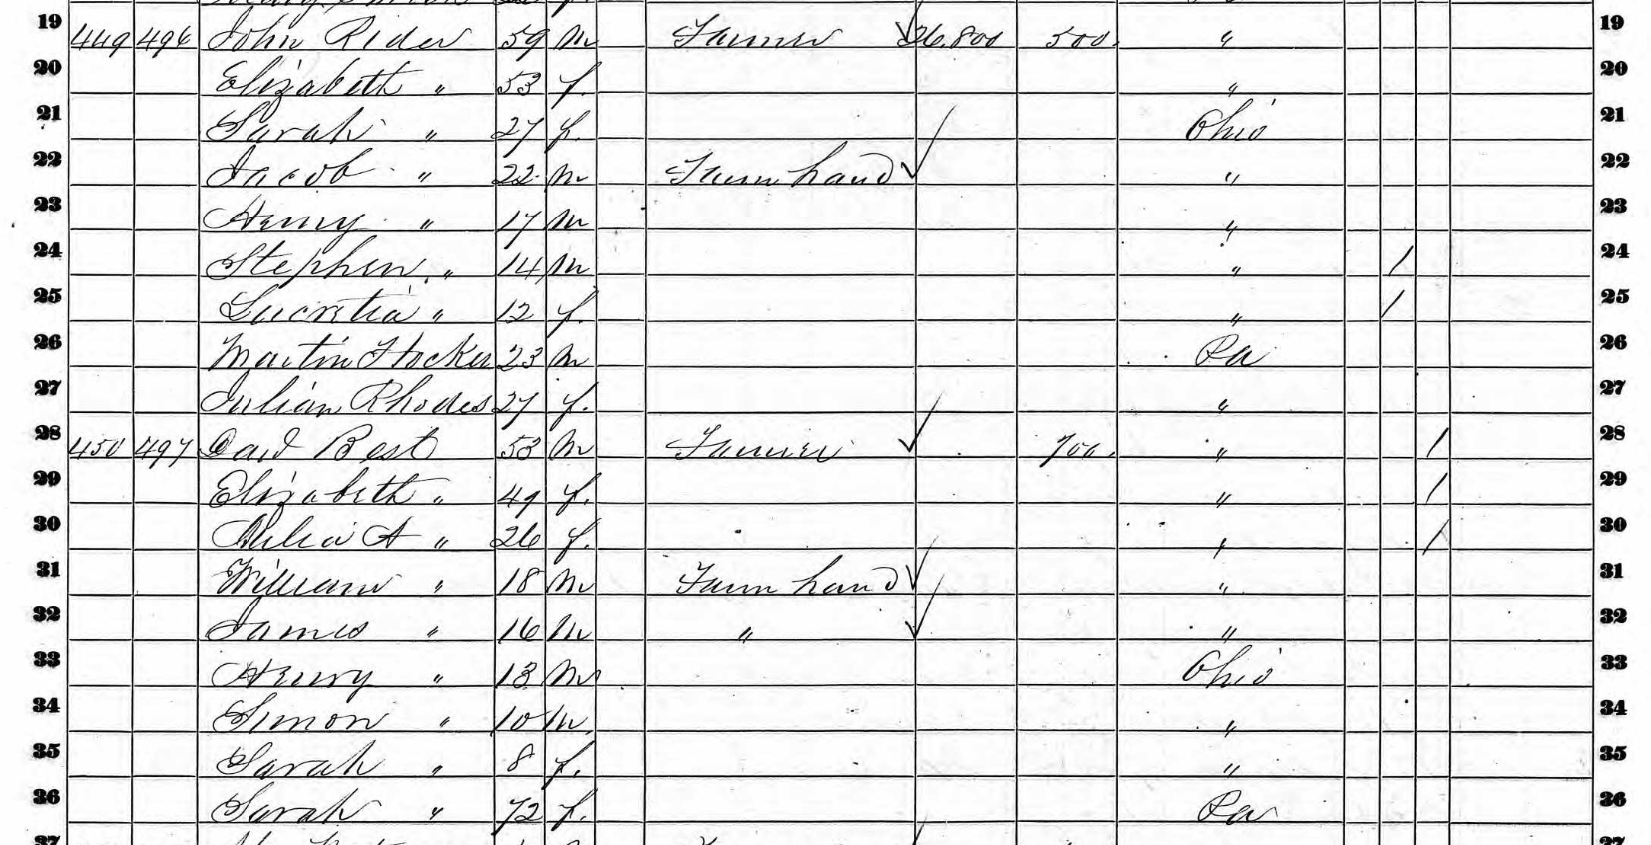 1860 Martin Hocker census record